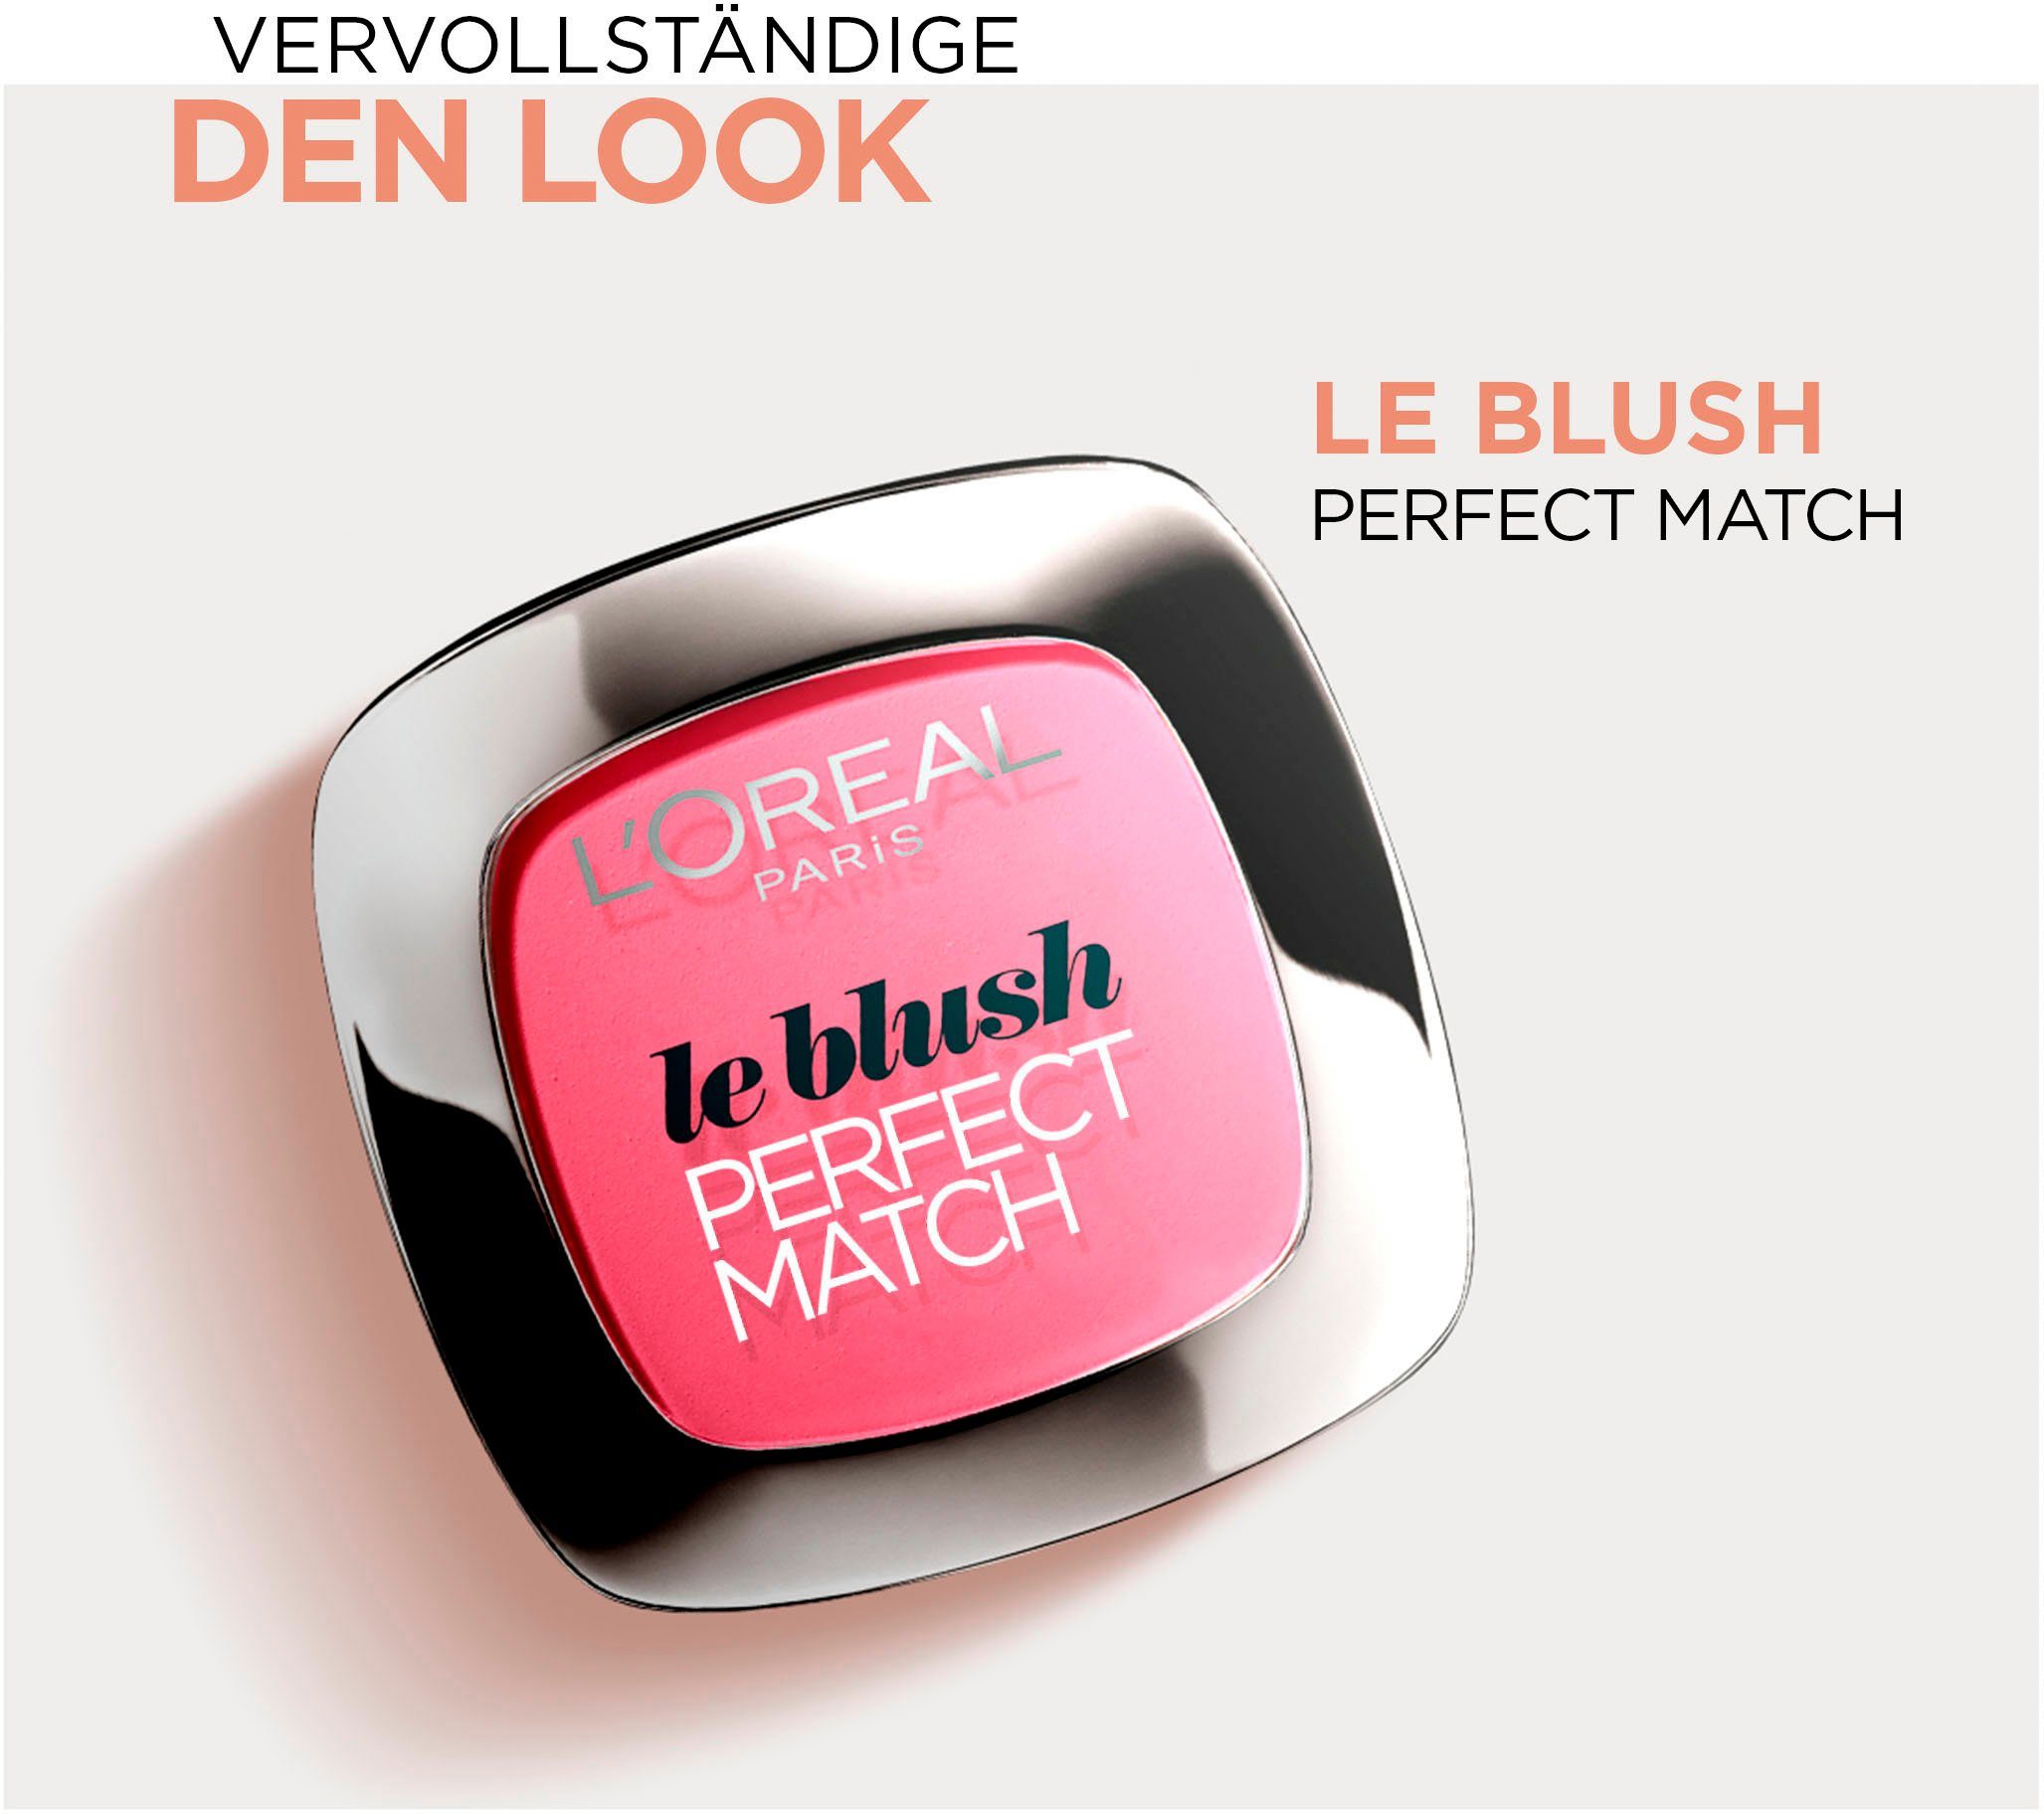 Perfect beige L'ORÉAL Foundation Match 2.C Make-Up PARIS Doppelpack 2.R